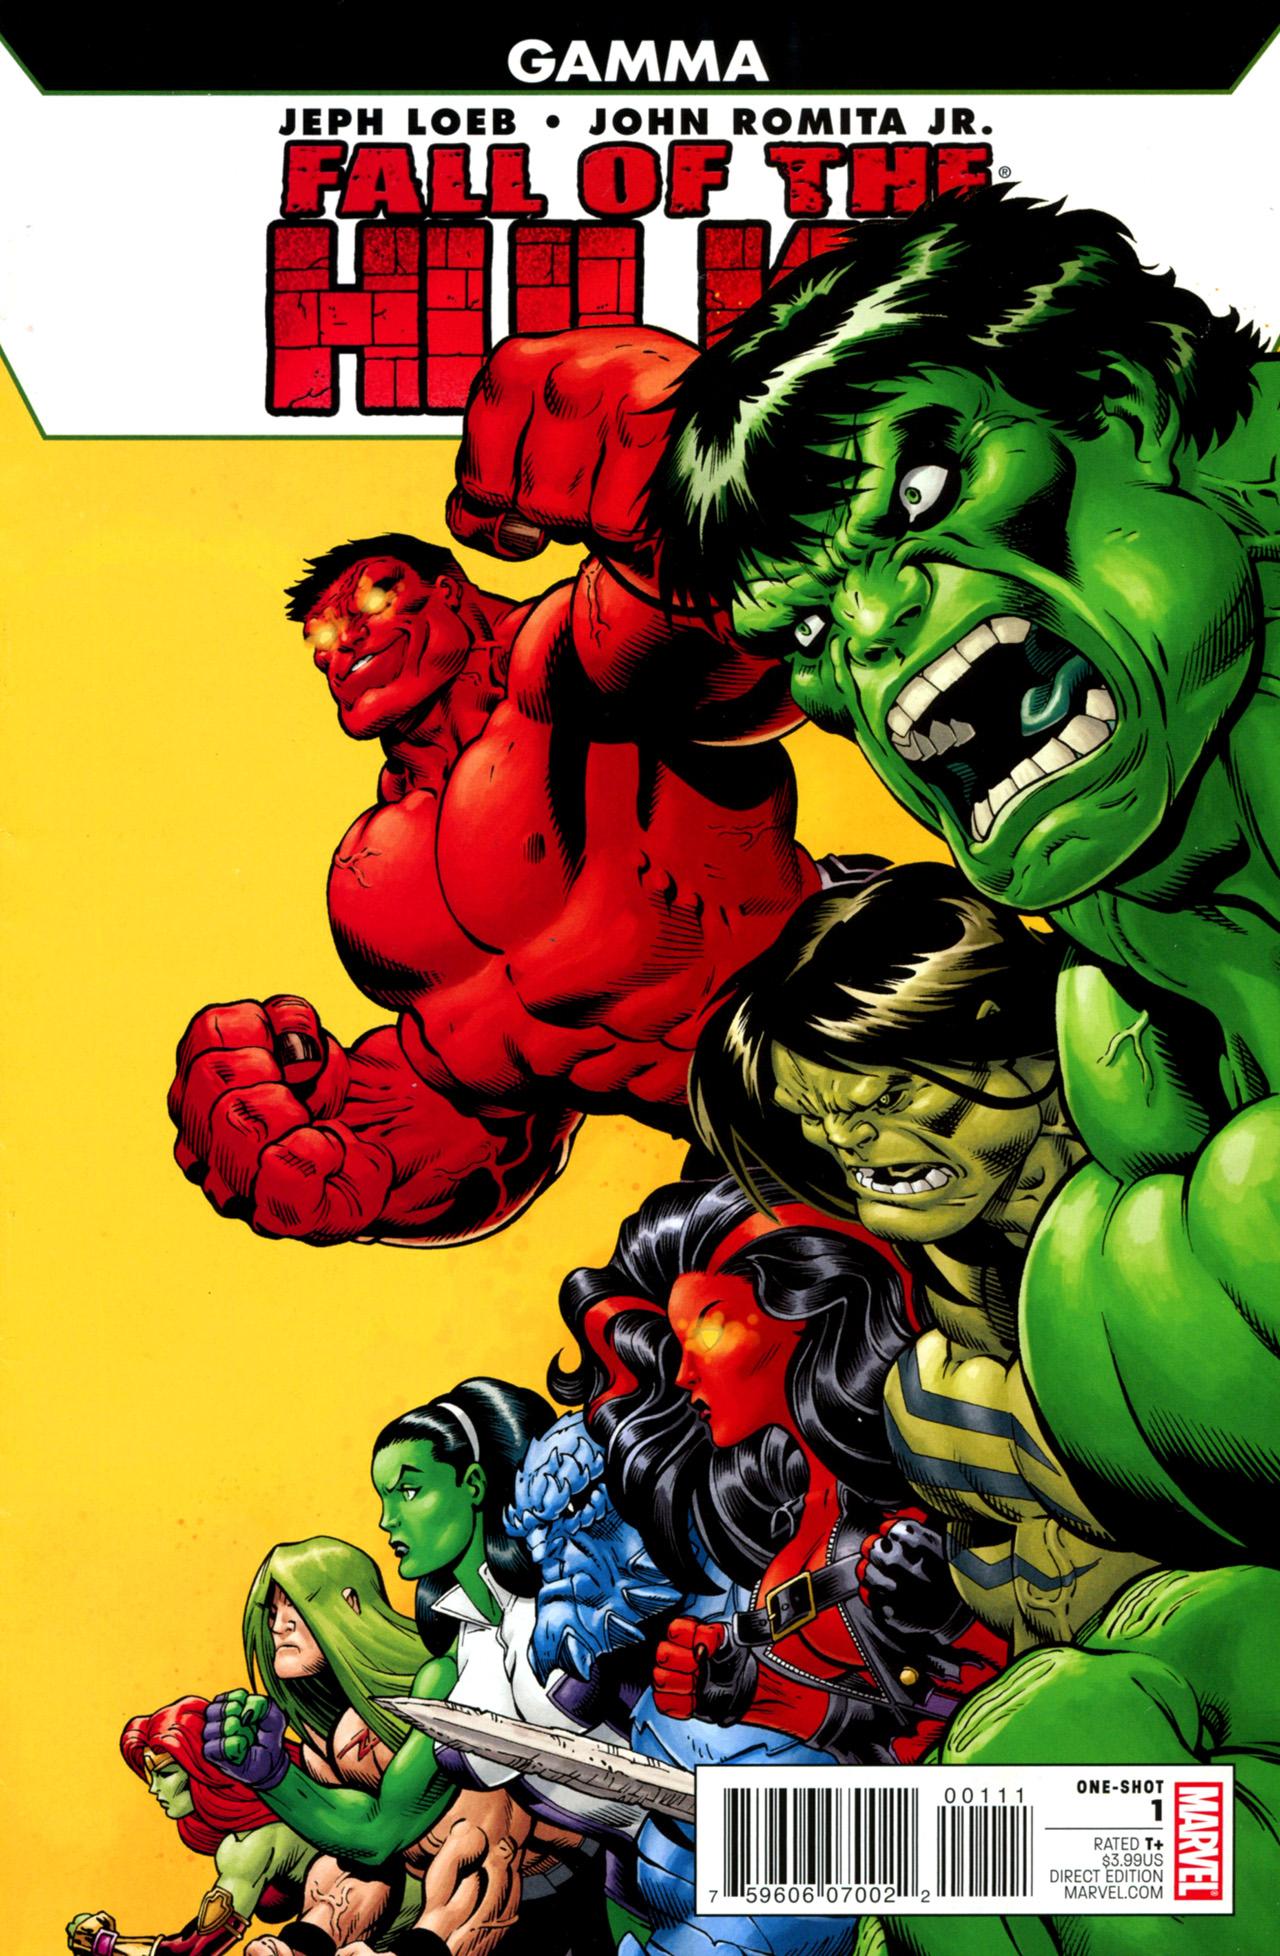 Fall of the Hulks: Gamma Vol. 1 #1